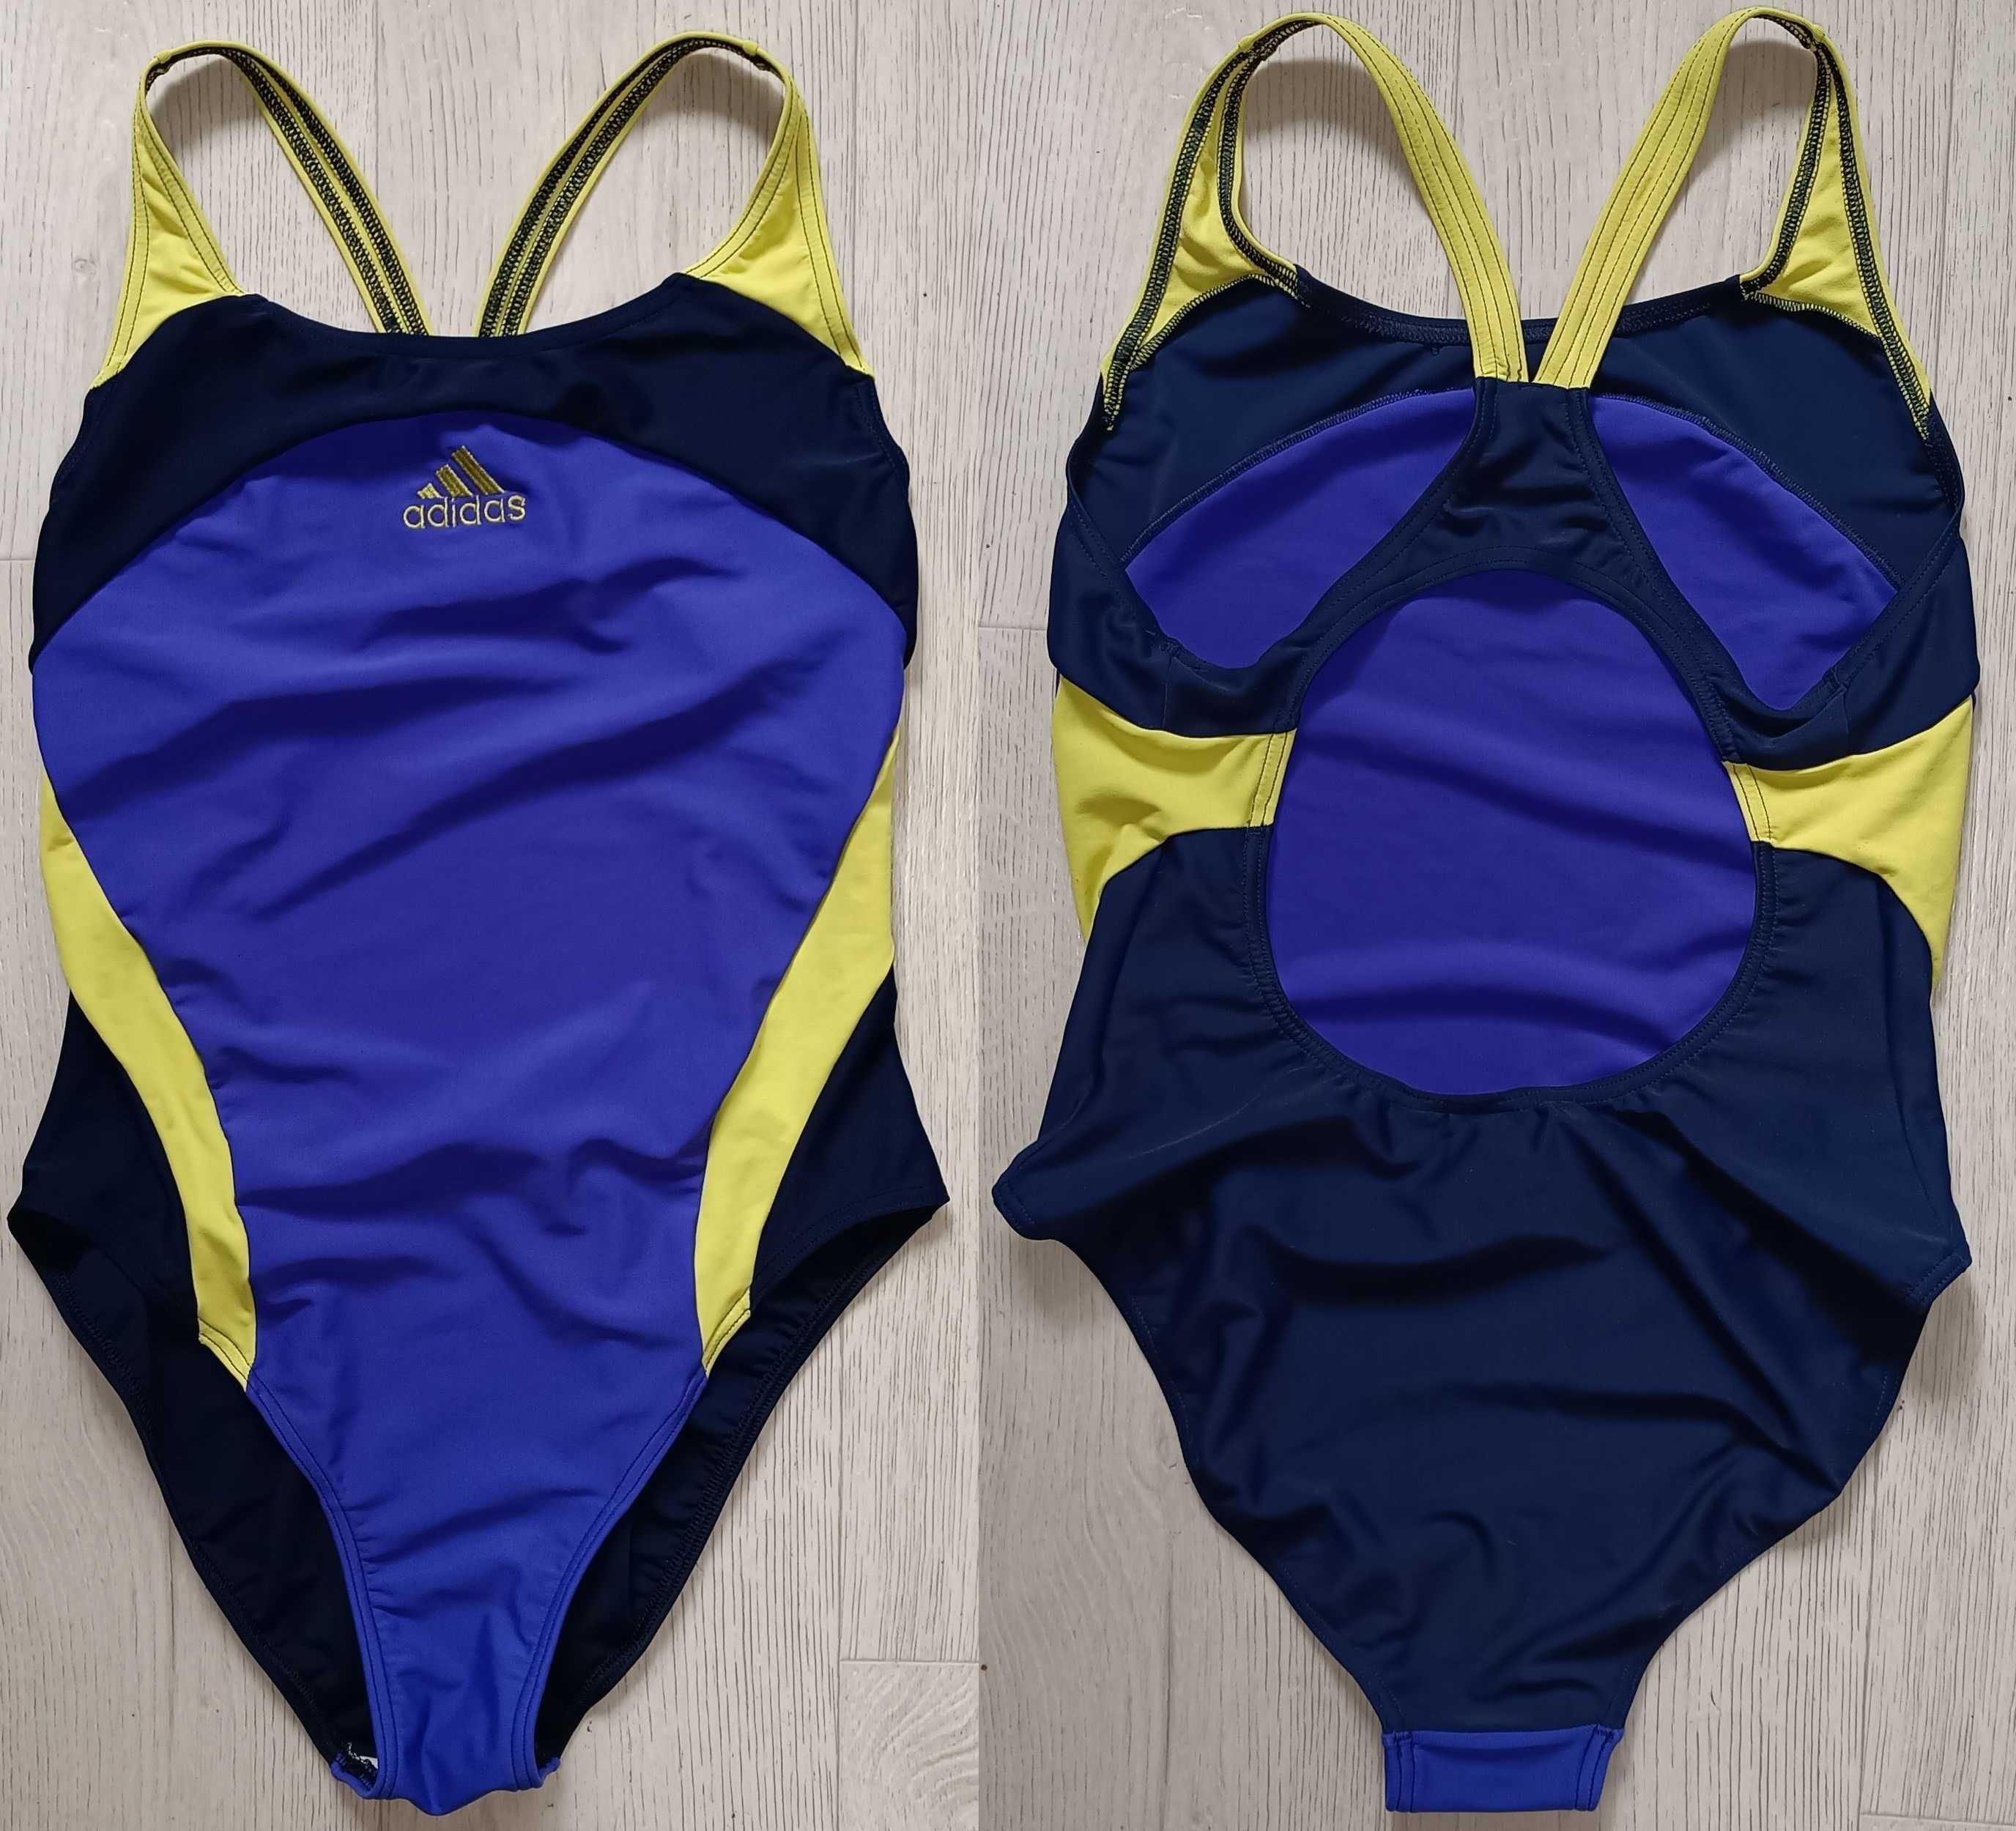 ADIDAS купальник цільний спортивний злитий жіночий пляж басейн